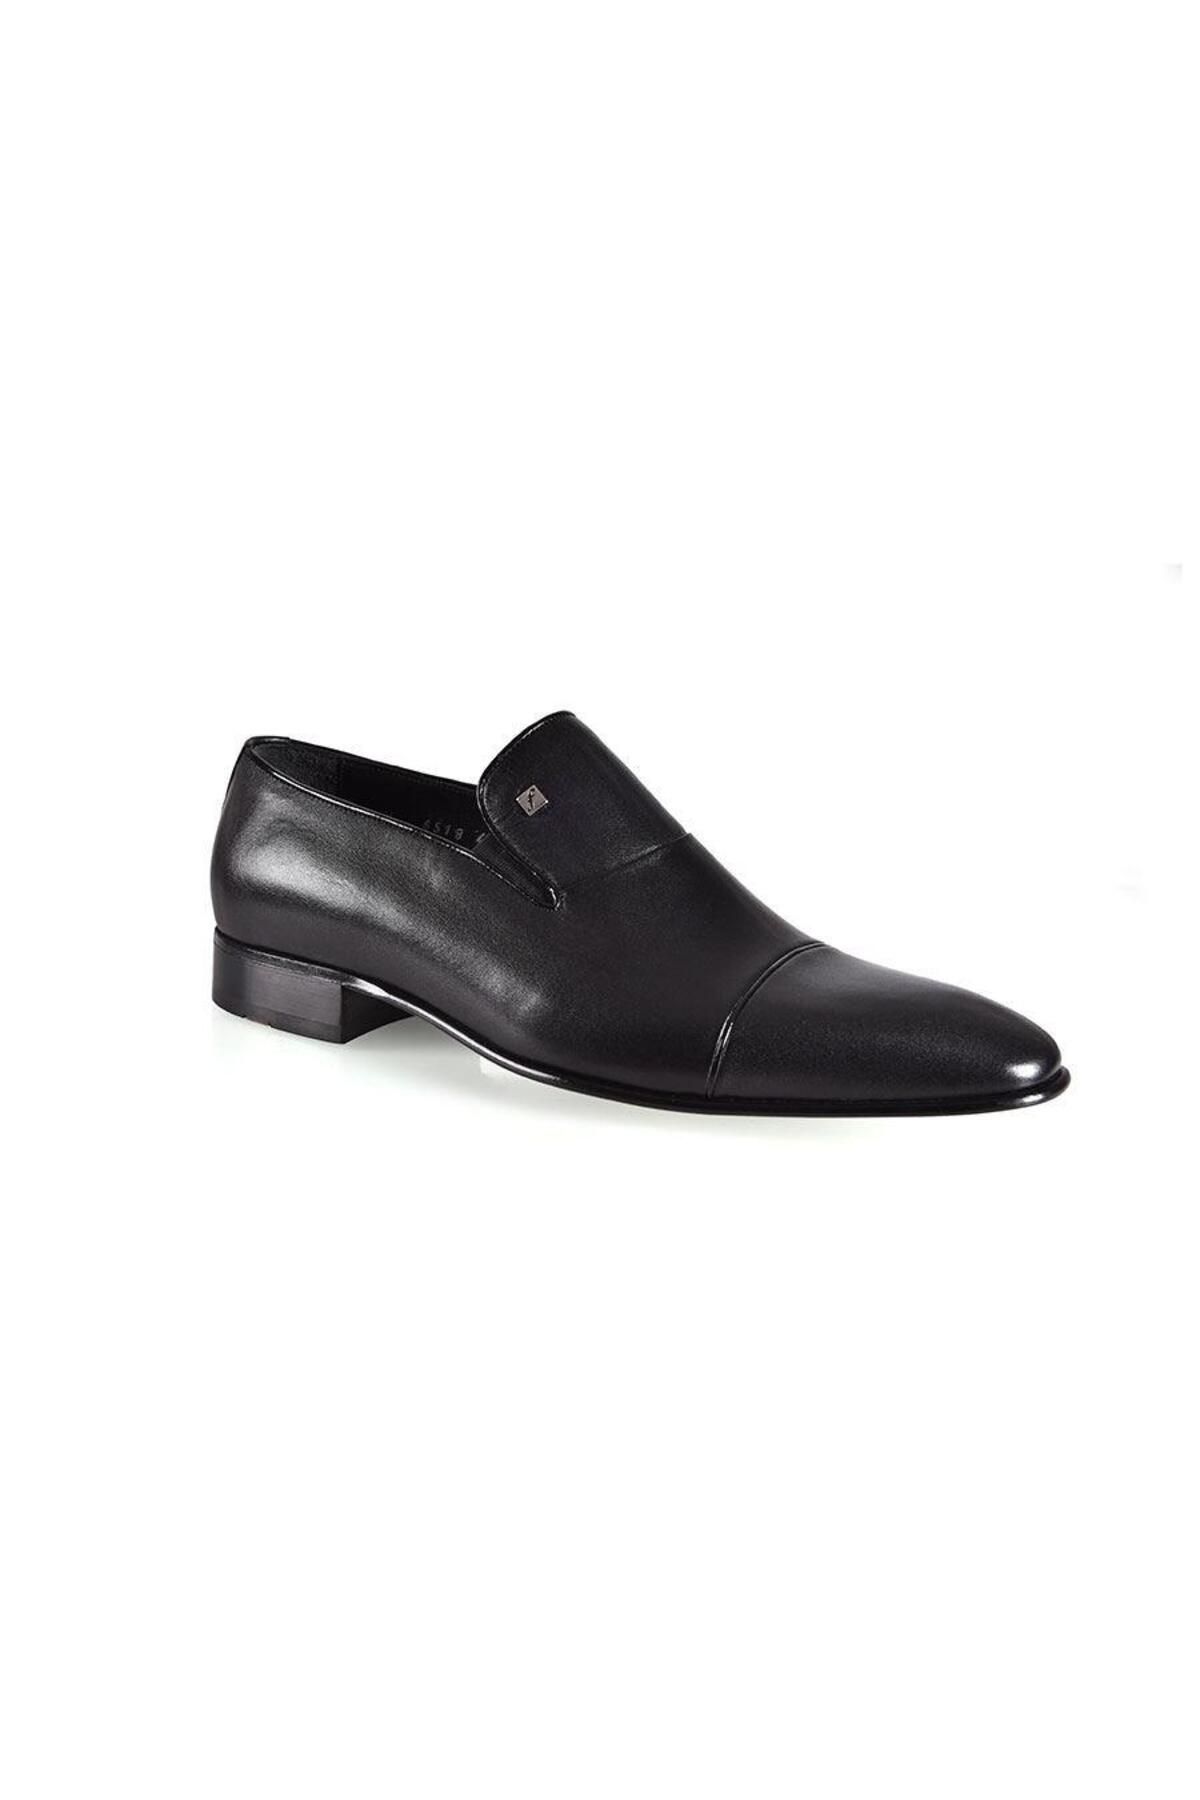 Fosco 6518 Hakiki Deri Erkek Klasik Ayakkabı Siyah